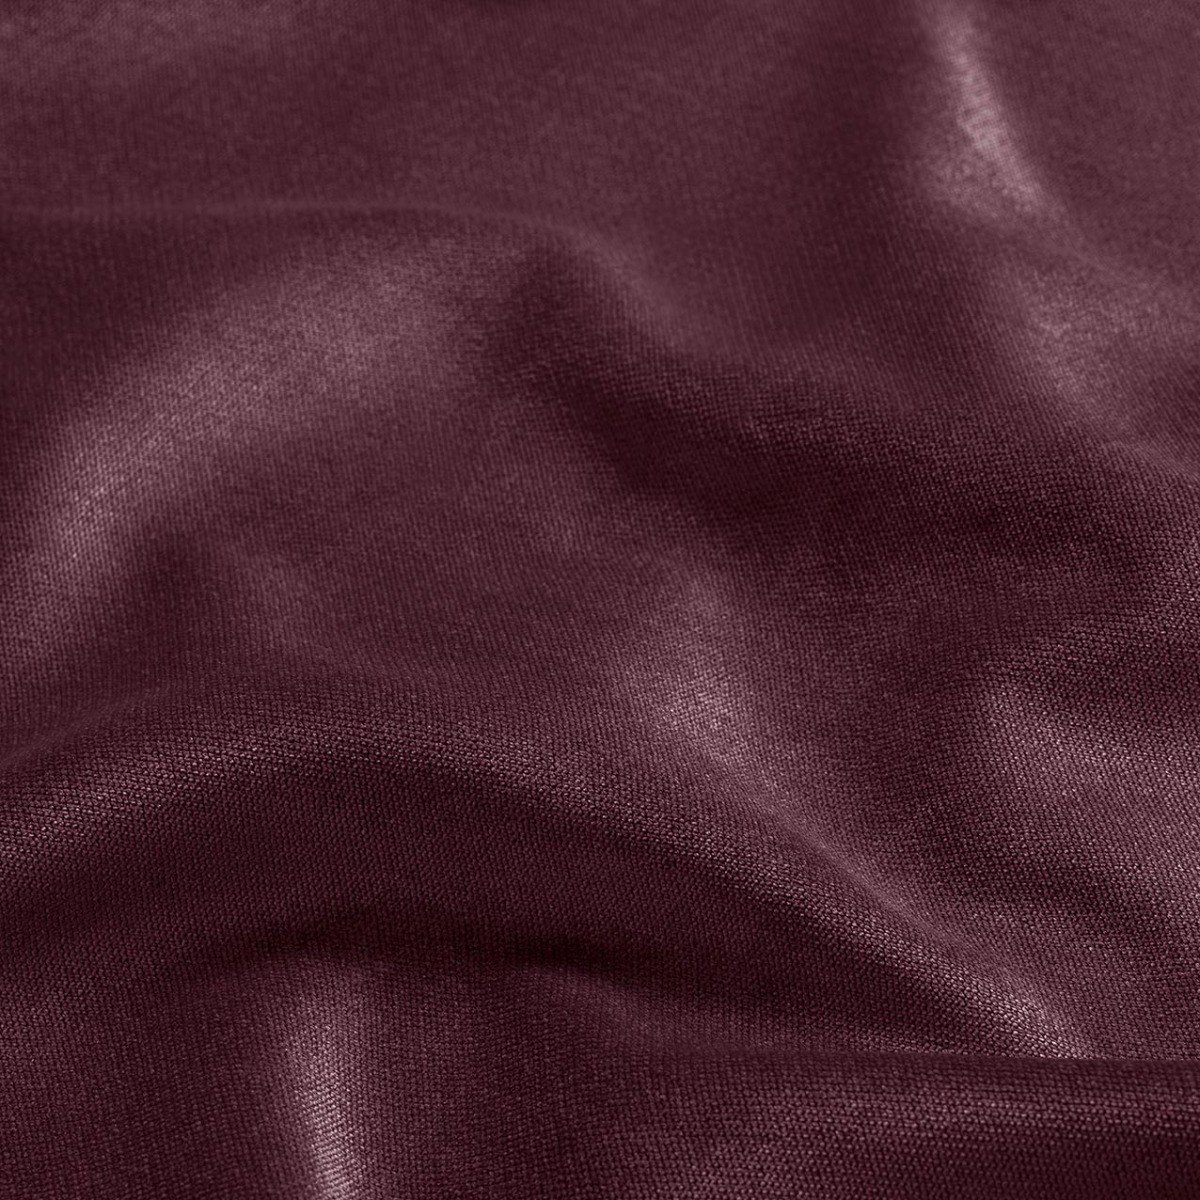  Портьерная ткань SHADE BERRY, ширина 290 см  - Фото